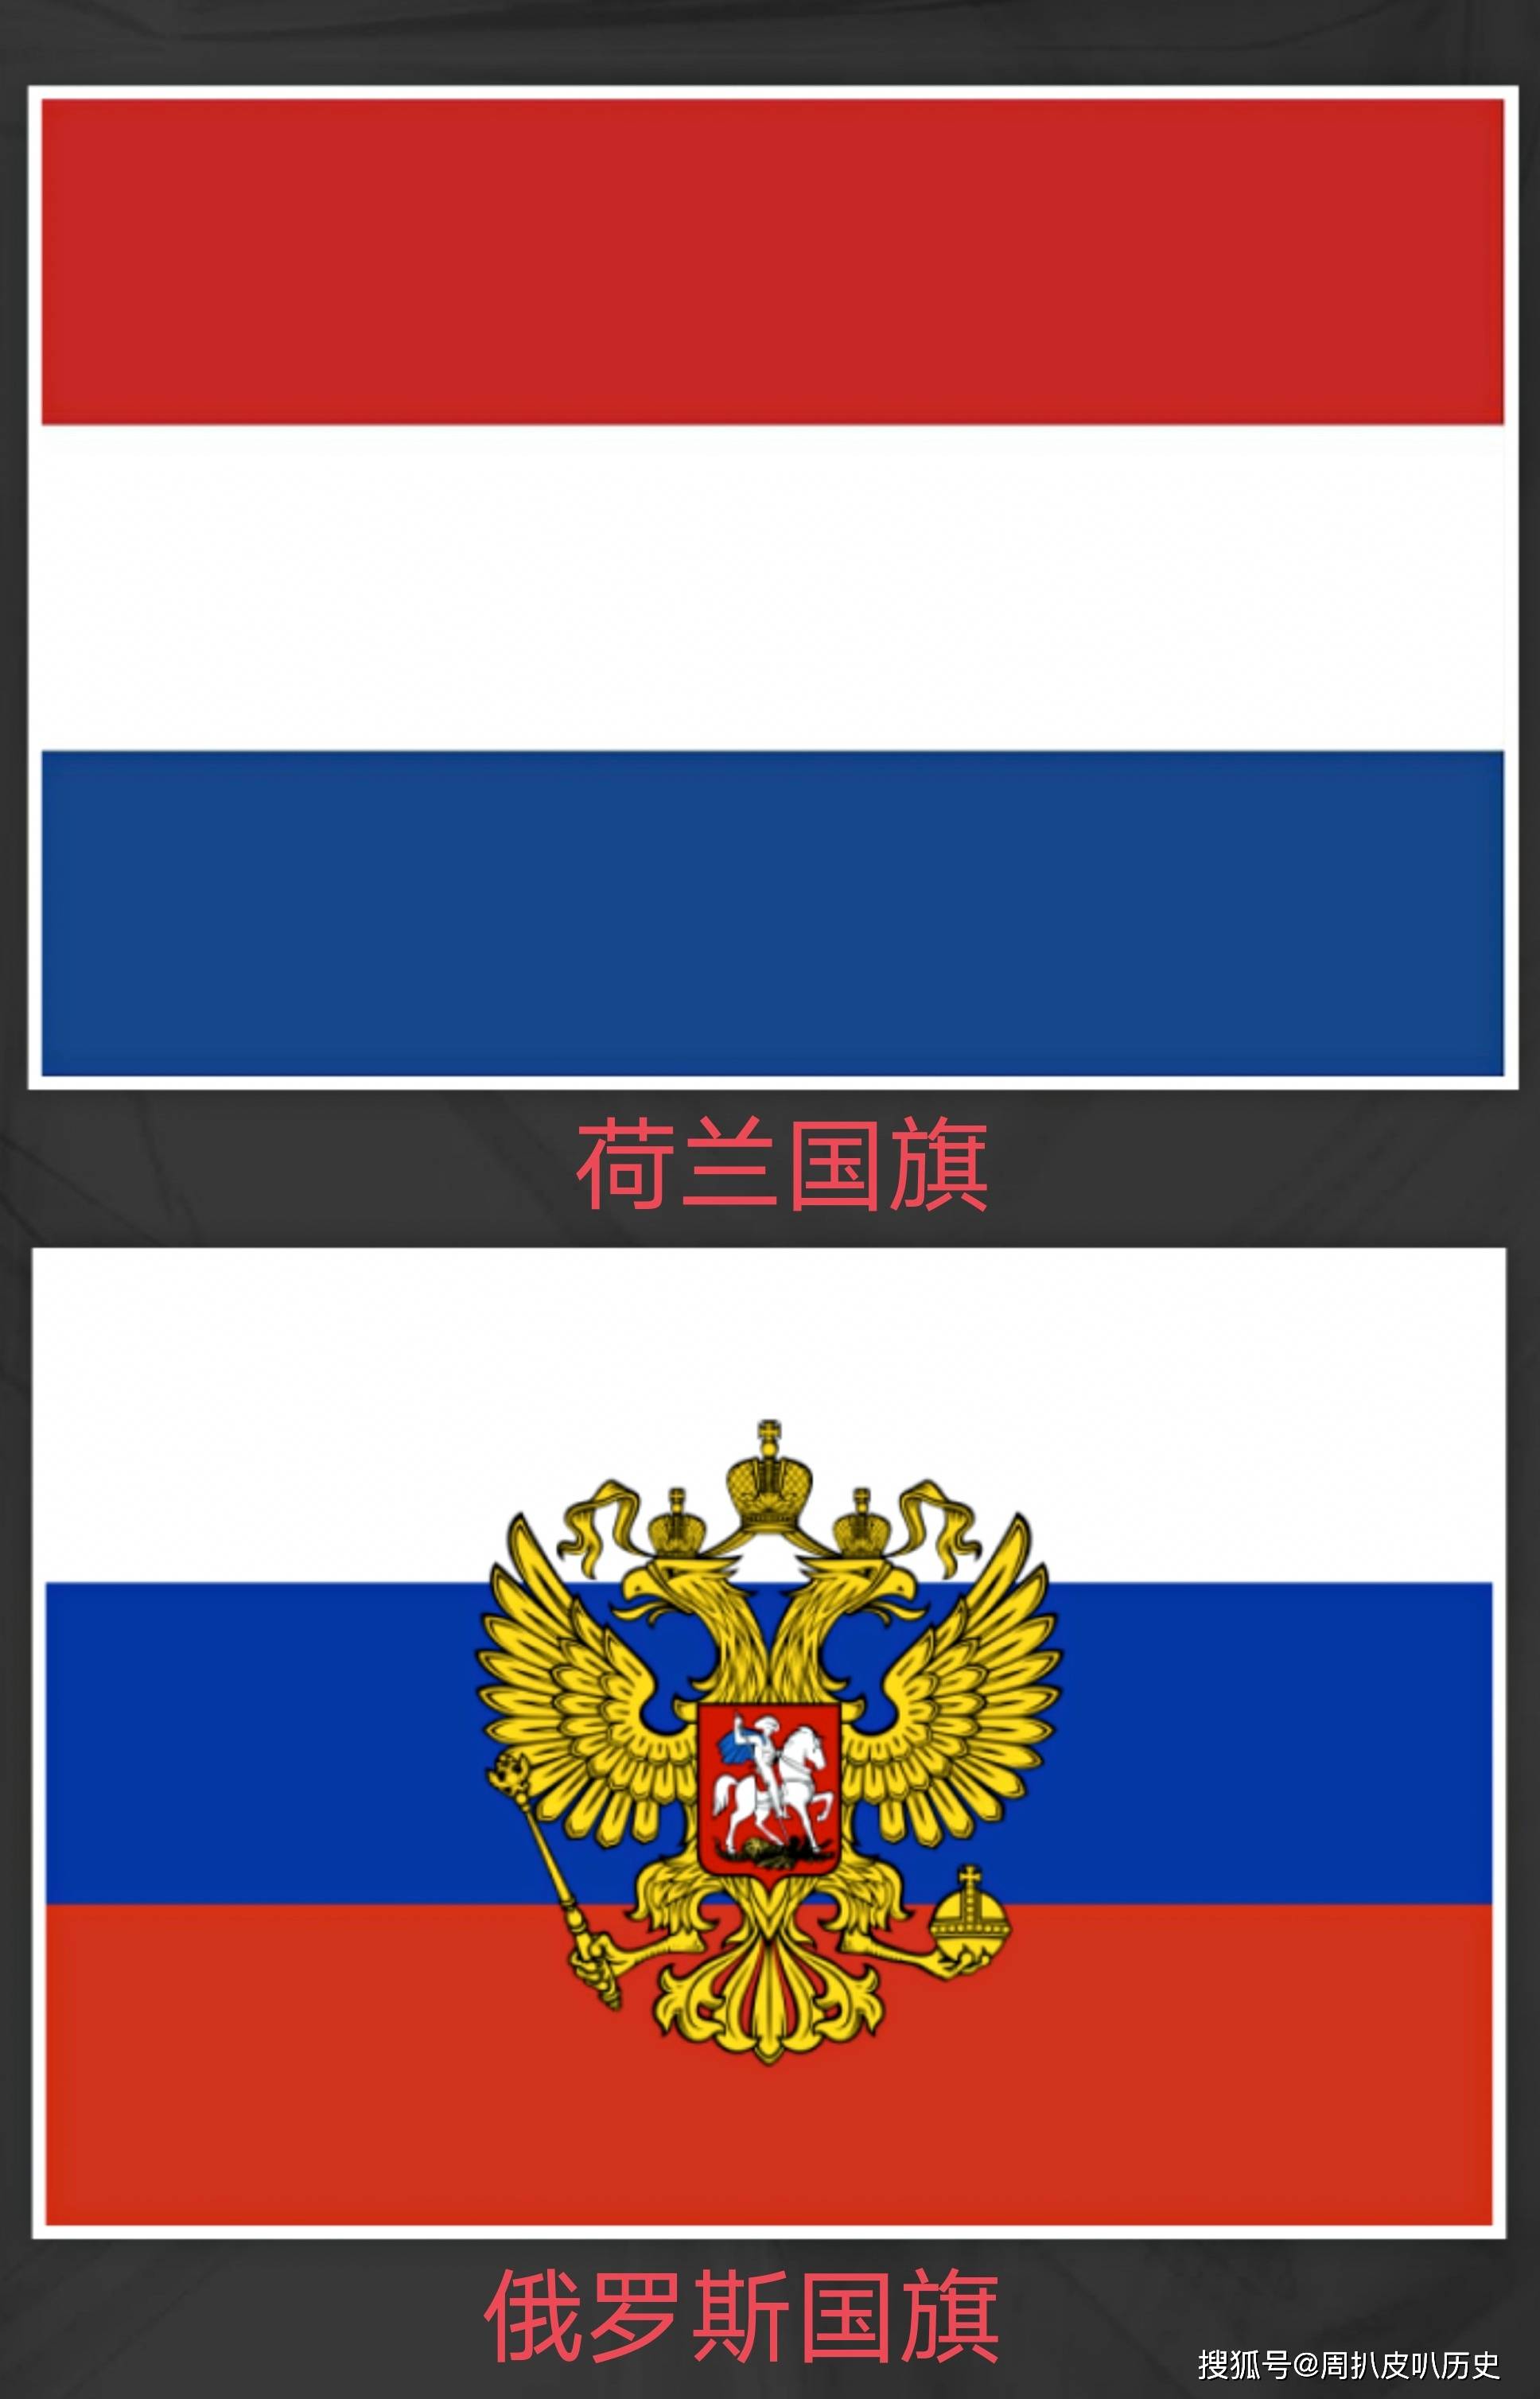 根据荷兰国旗设计的俄罗斯国旗在经济领域,彼得大帝同样以西欧为示范